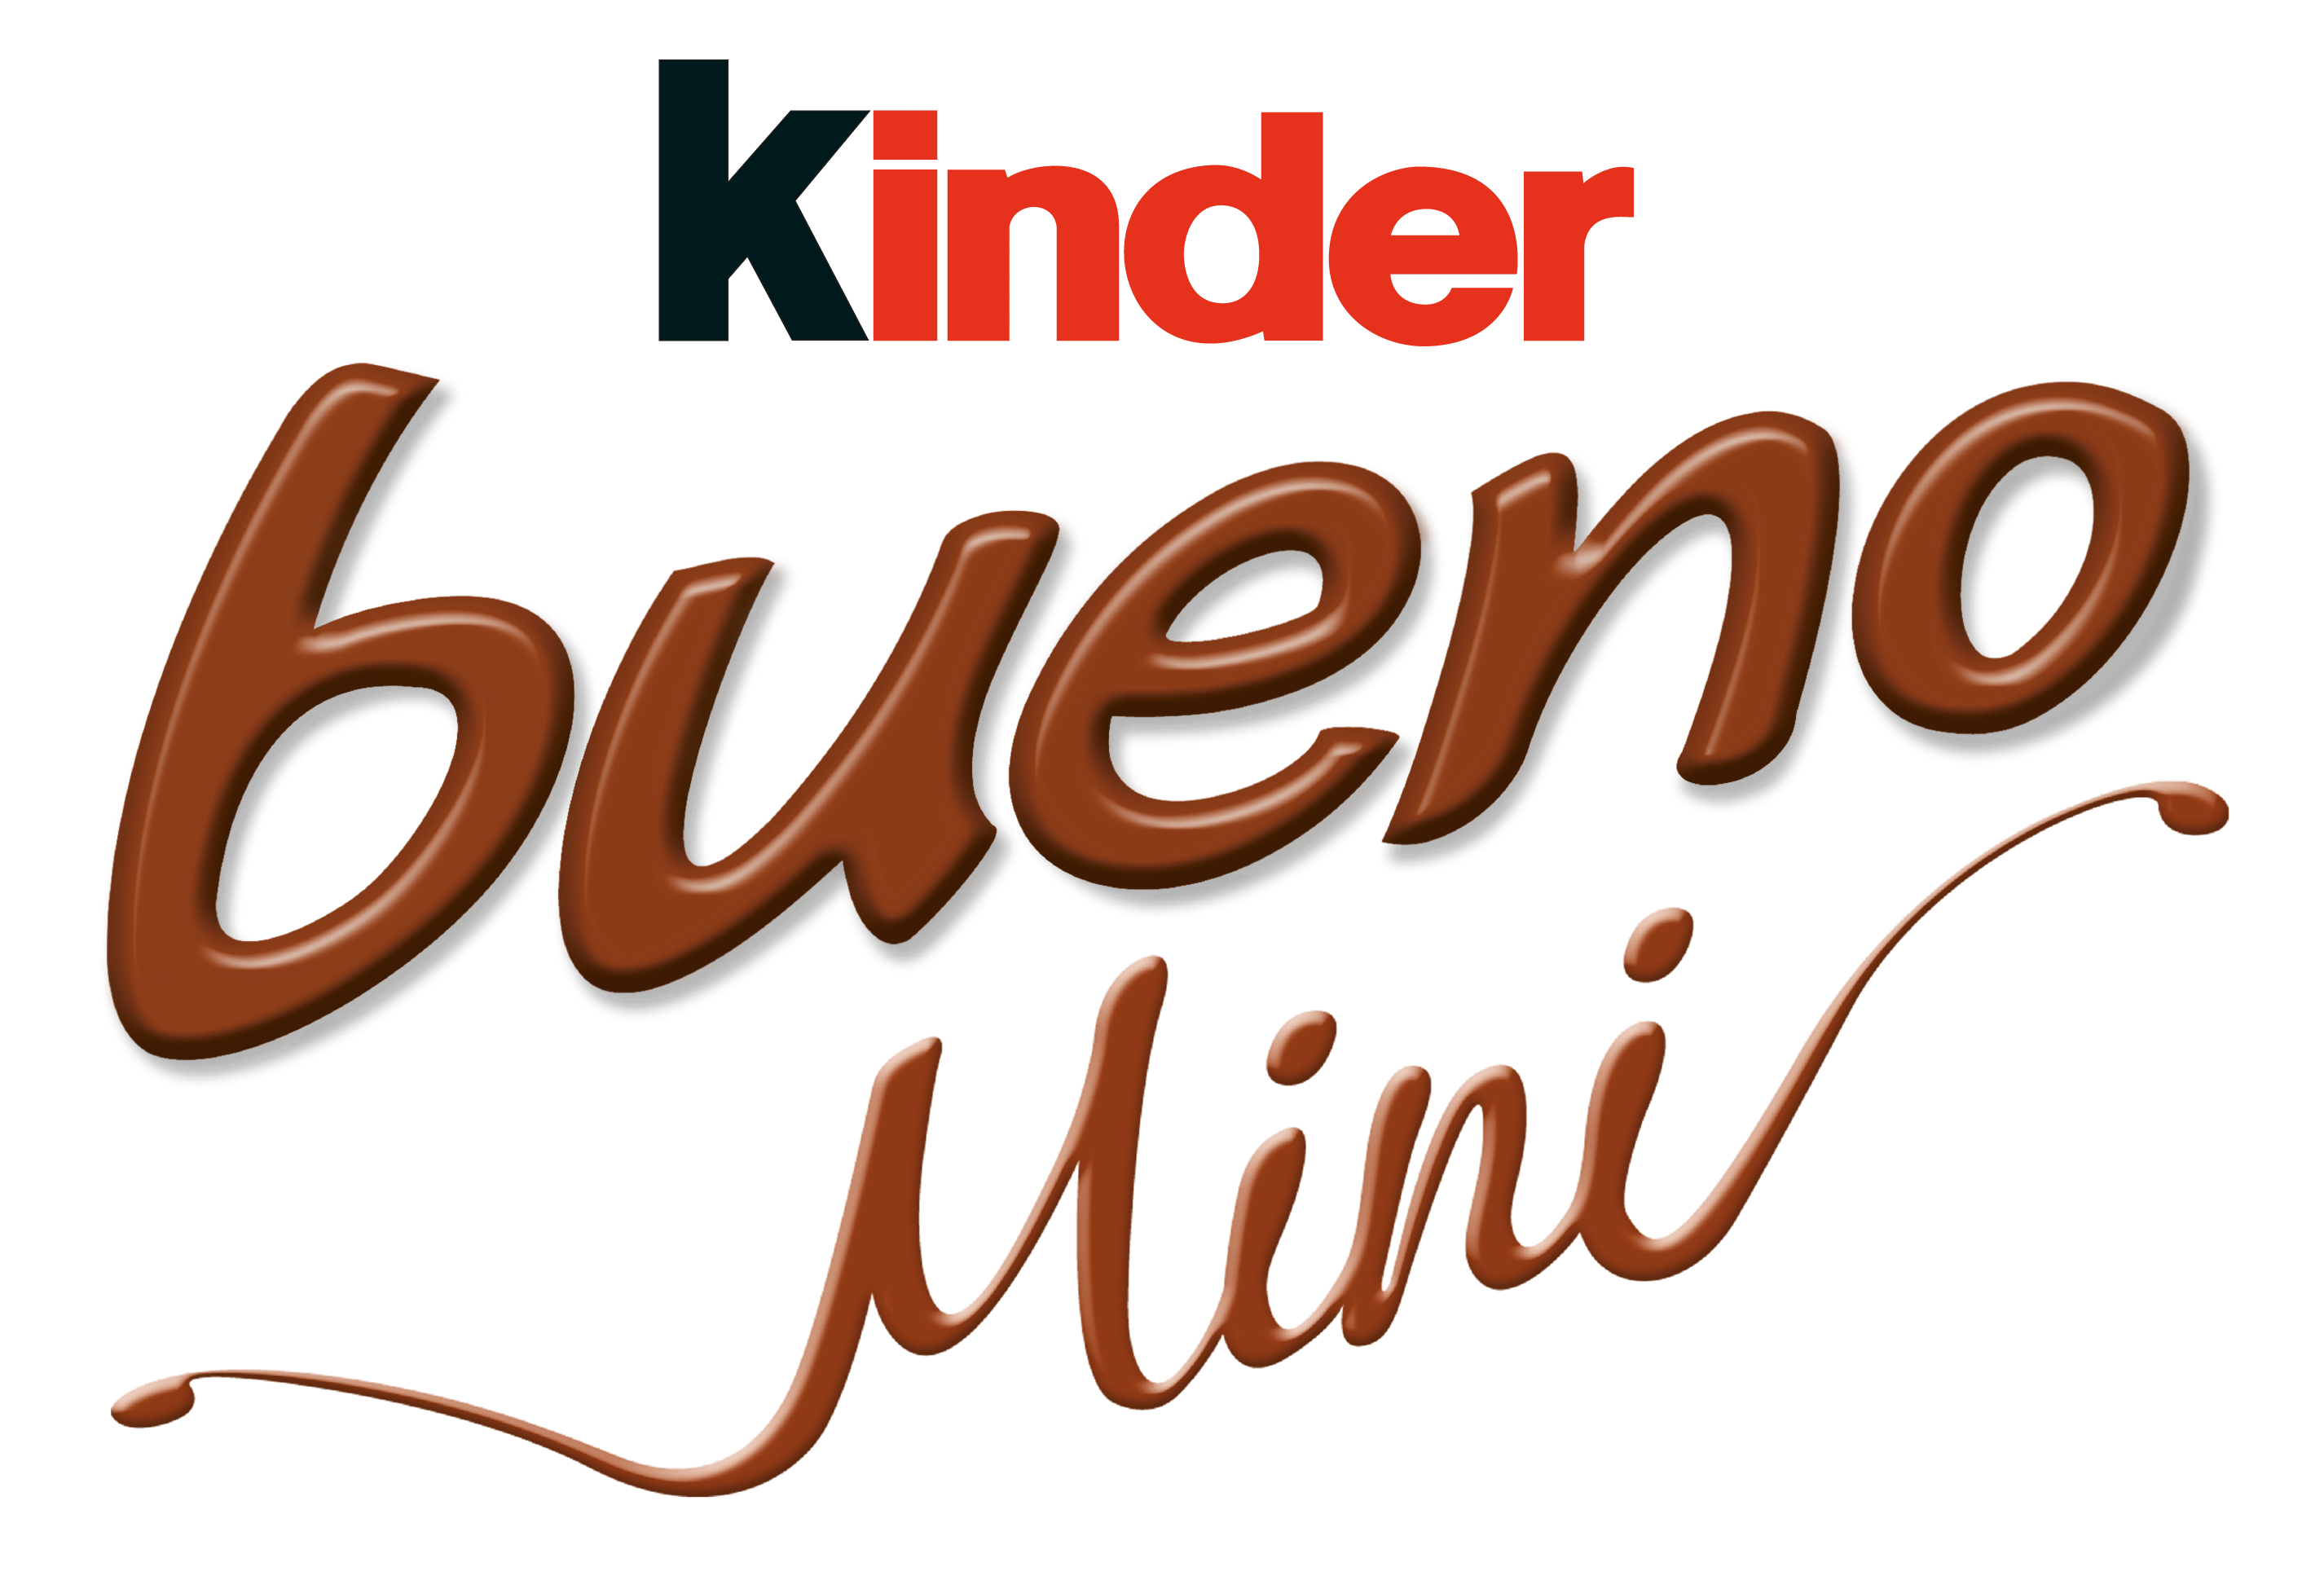 Kinder Bueno Mini logo